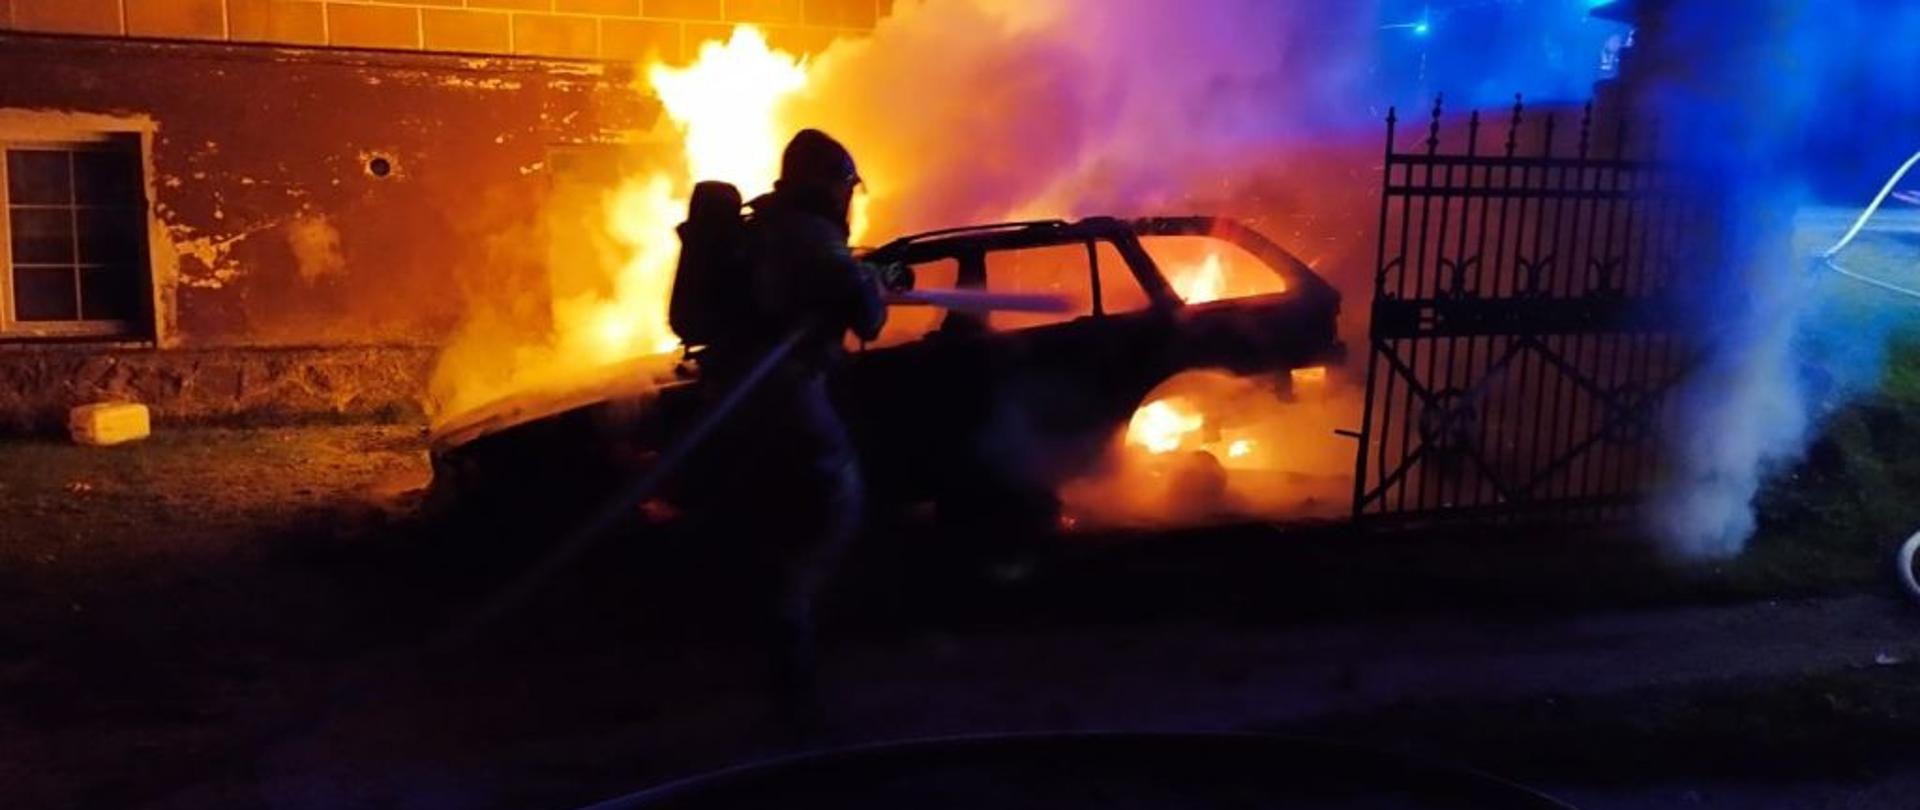 Zdjęcie wykonane w nocy. Centralny punkt zdjęcia stanowi pomarańczowy kolor, ogień obejmujący auto. Zdjęcie ciemne. Widać tylko zarys palącego się ognia i gaszącego je strażaka.